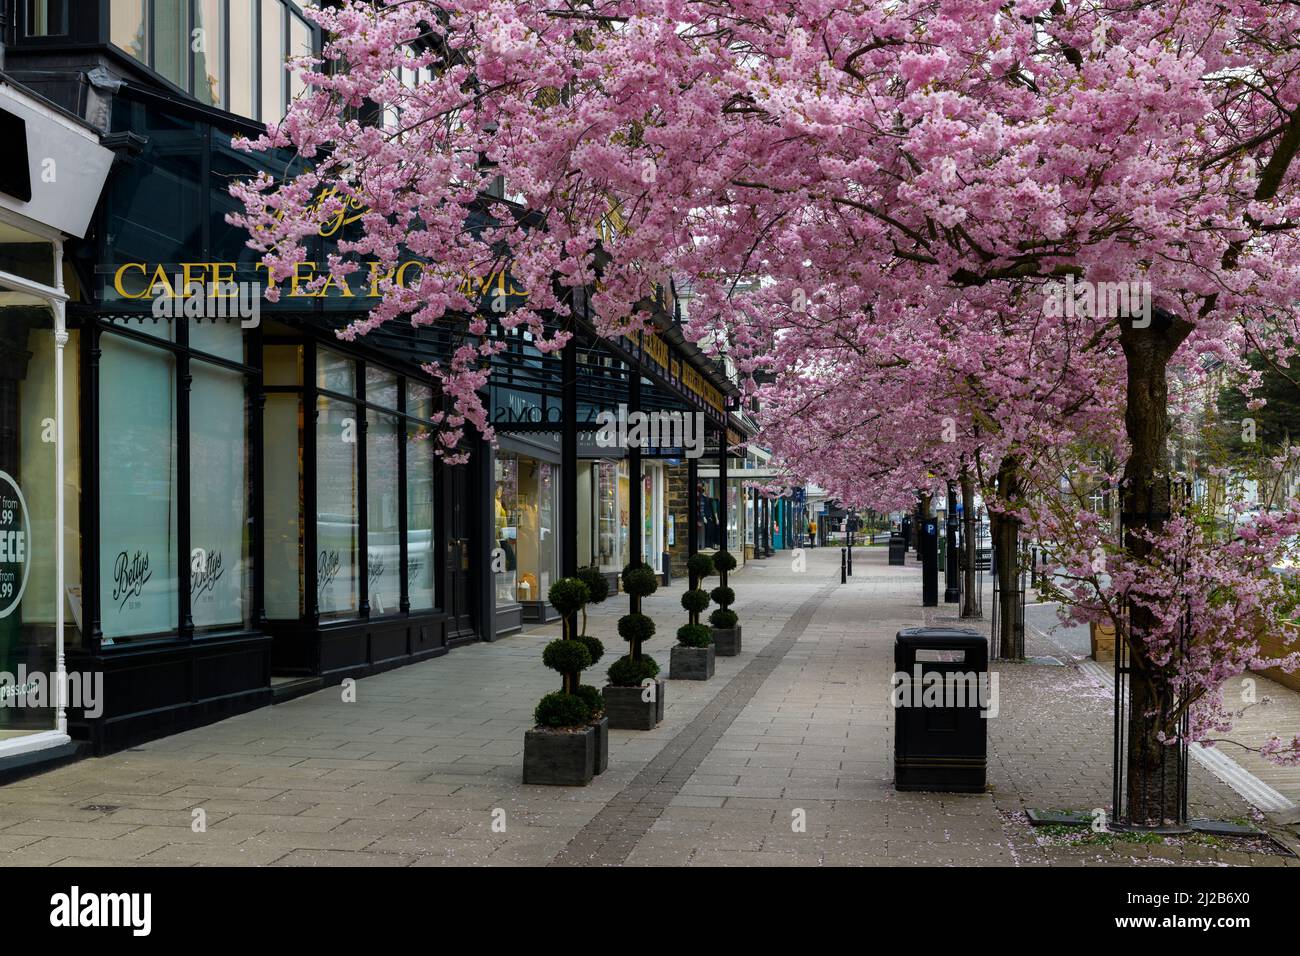 Centro storico della città di primavera (splendidi e colorati ciliegi in fiore, elegante ristorante-cafe shopfront) - The Grove, Ilkley, Yorkshire, Inghilterra, Regno Unito. Foto Stock